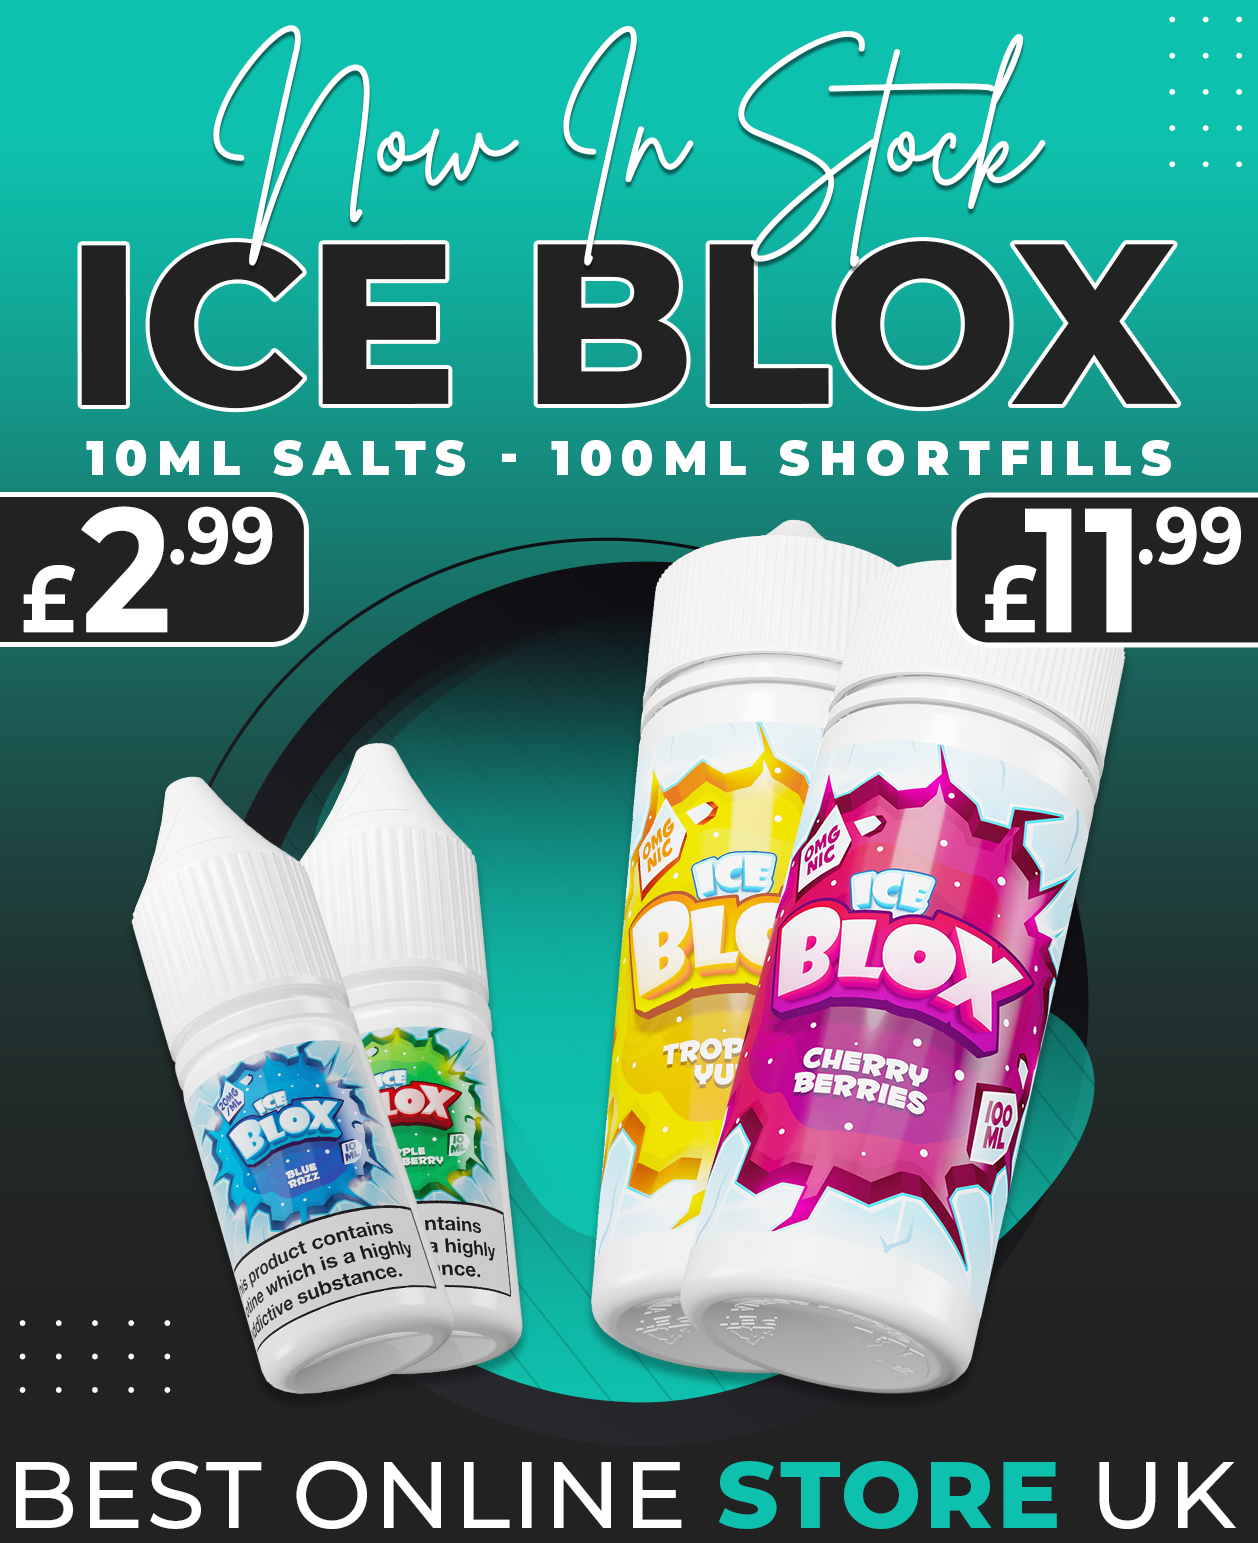 Ice Blox 10ml Salts - Ecigone